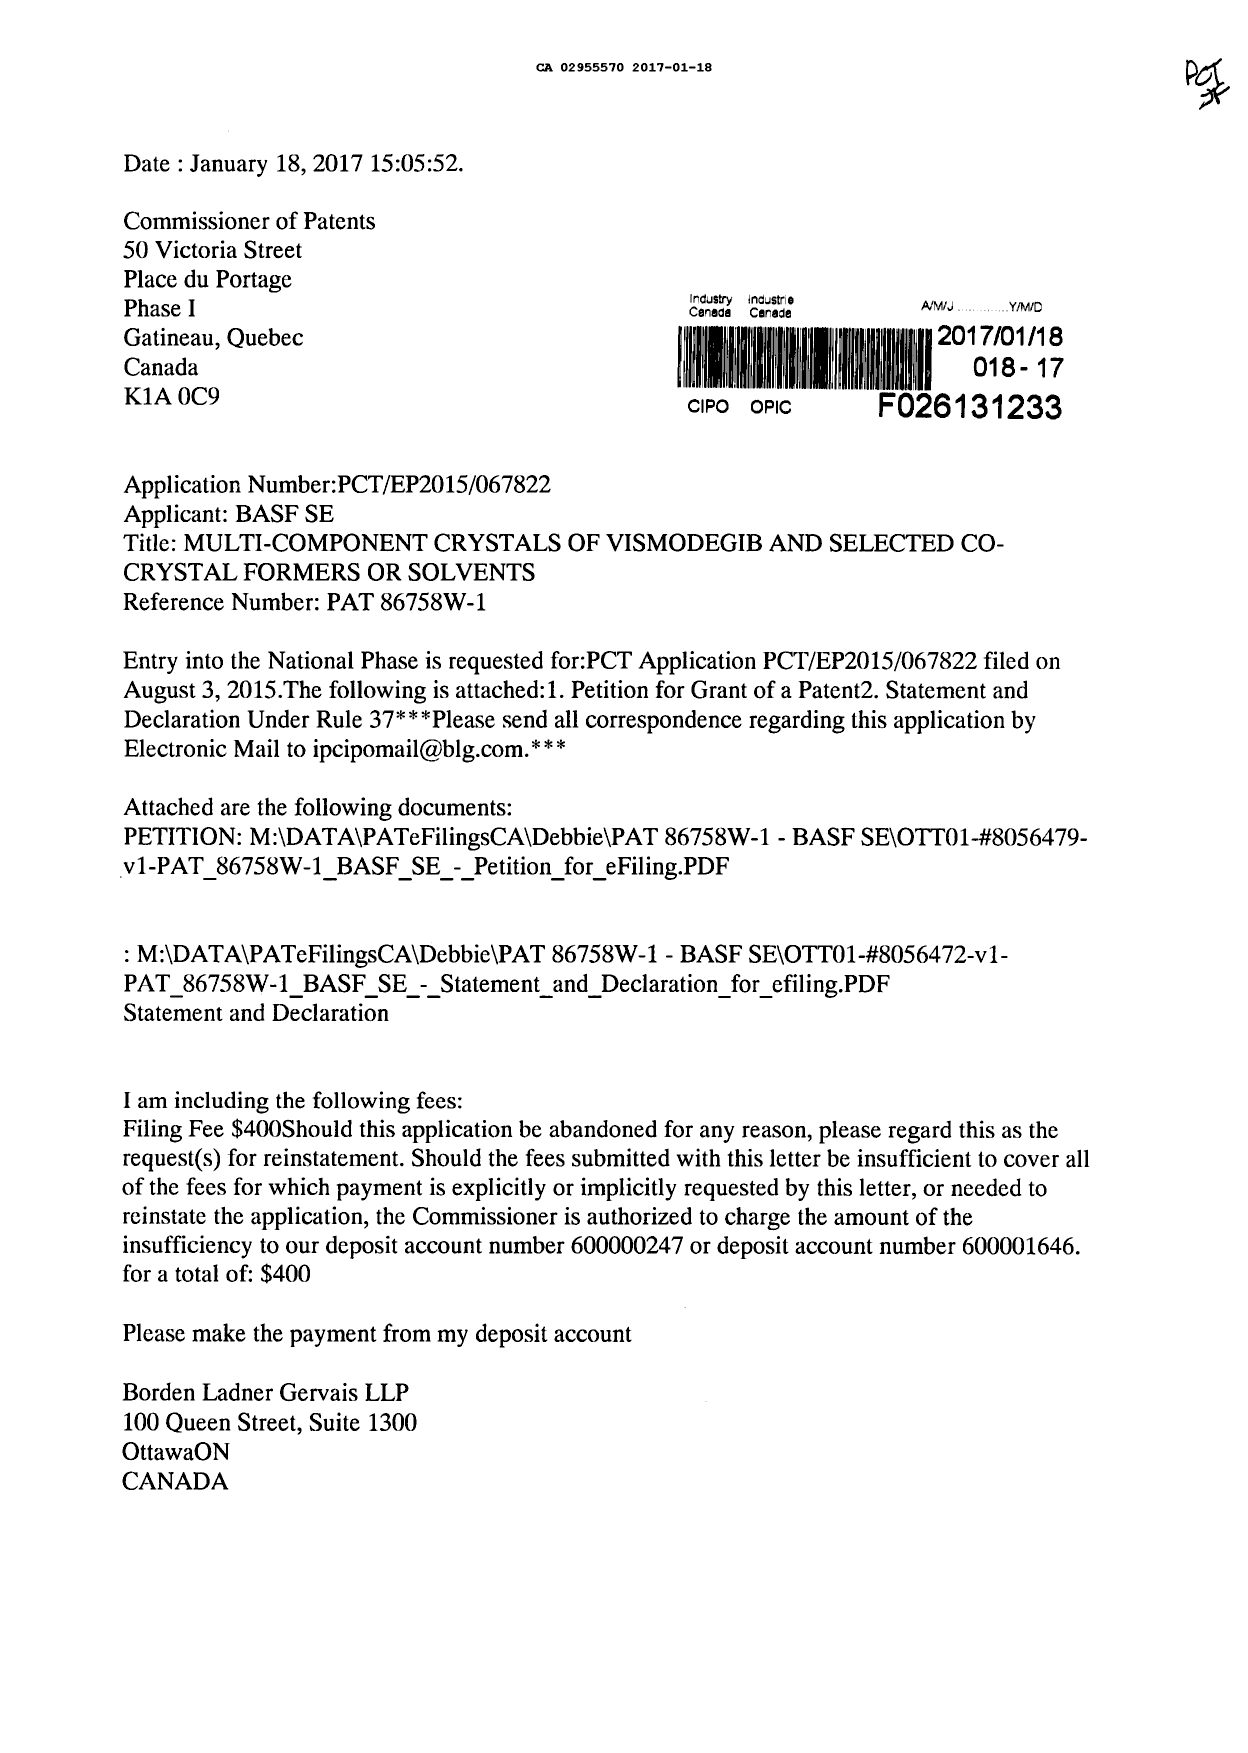 Document de brevet canadien 2955570. Demande d'entrée en phase nationale 20161218. Image 1 de 5